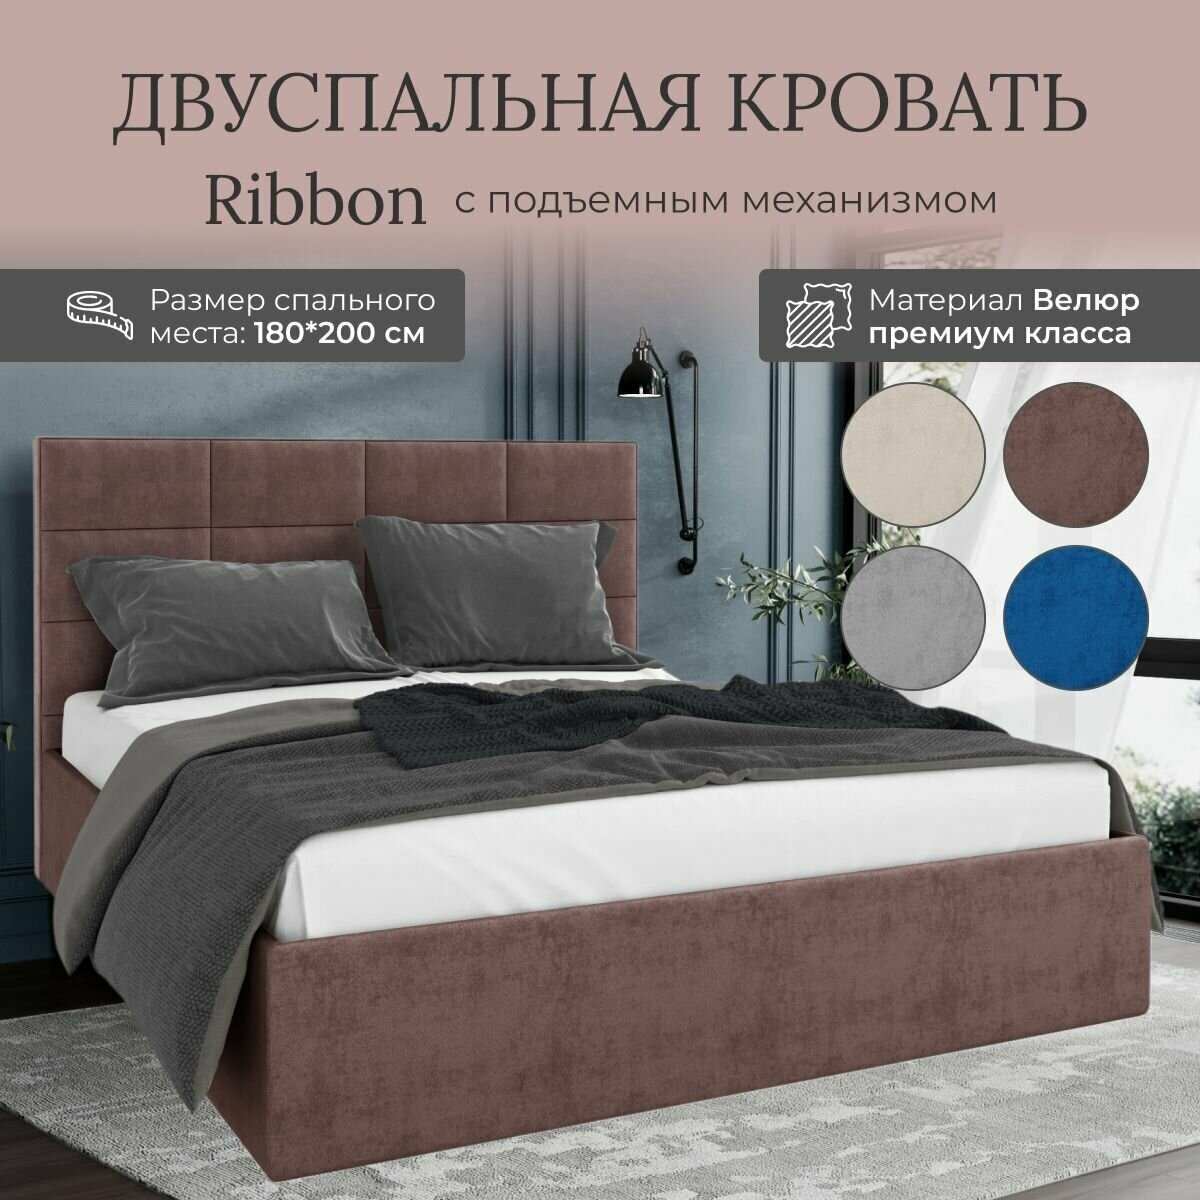 Кровать с подъемным механизмом Luxson Ribbon двуспальная размер 180х200